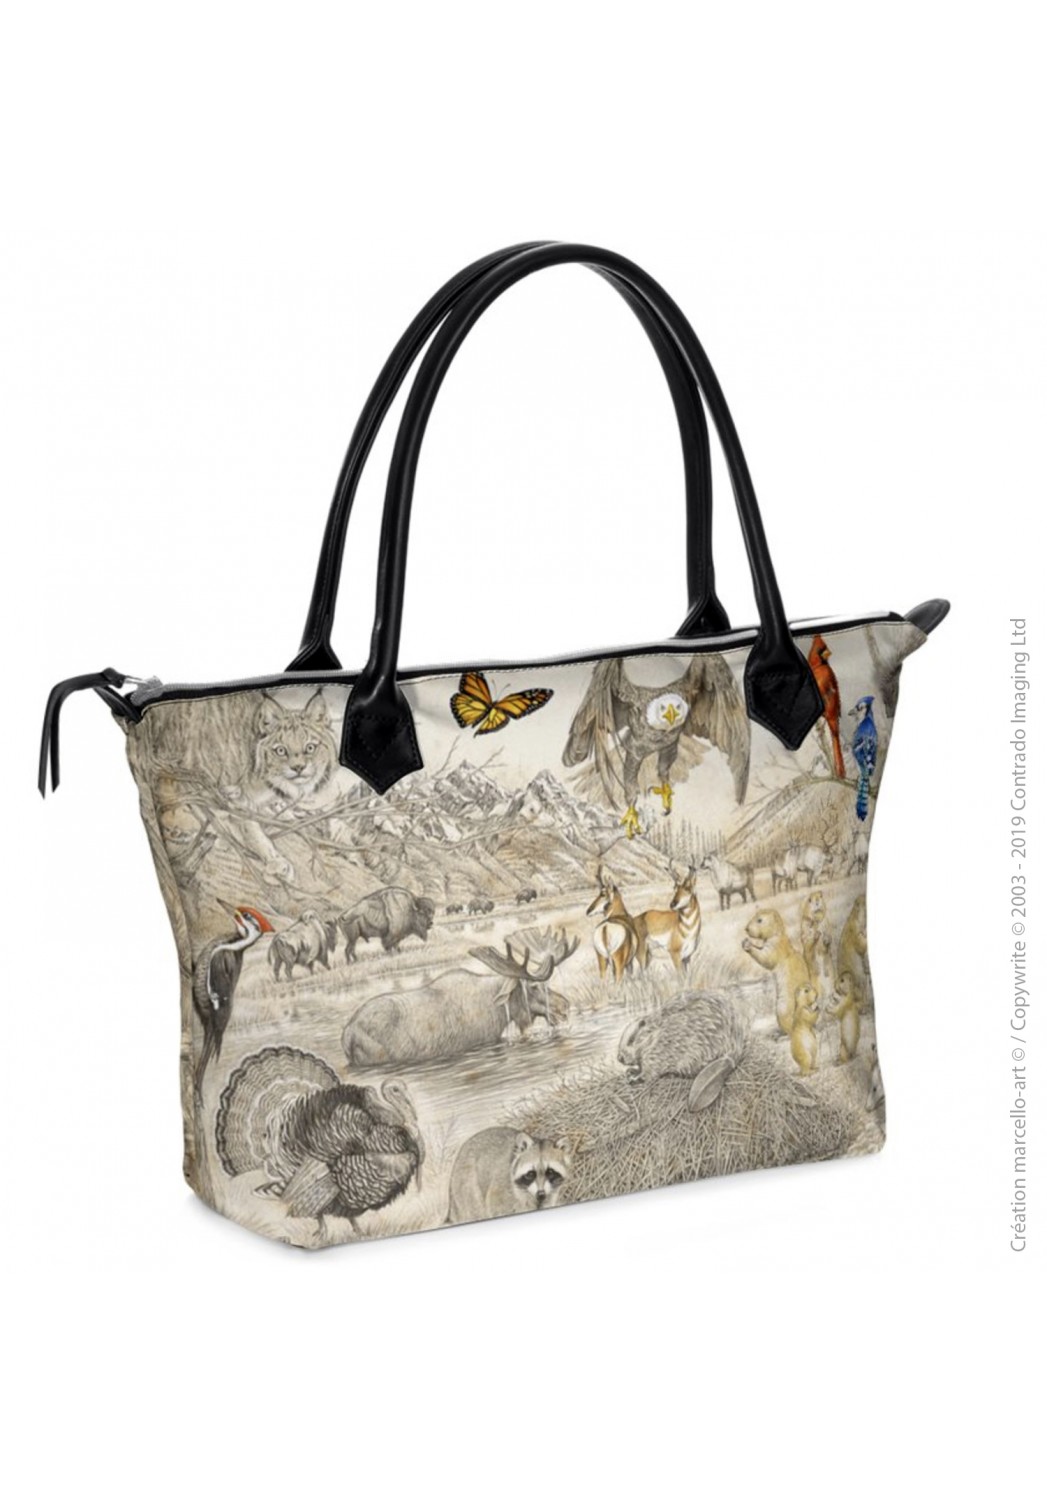 Marcello-art: Fashion accessory Zipped bag 393 american fauna